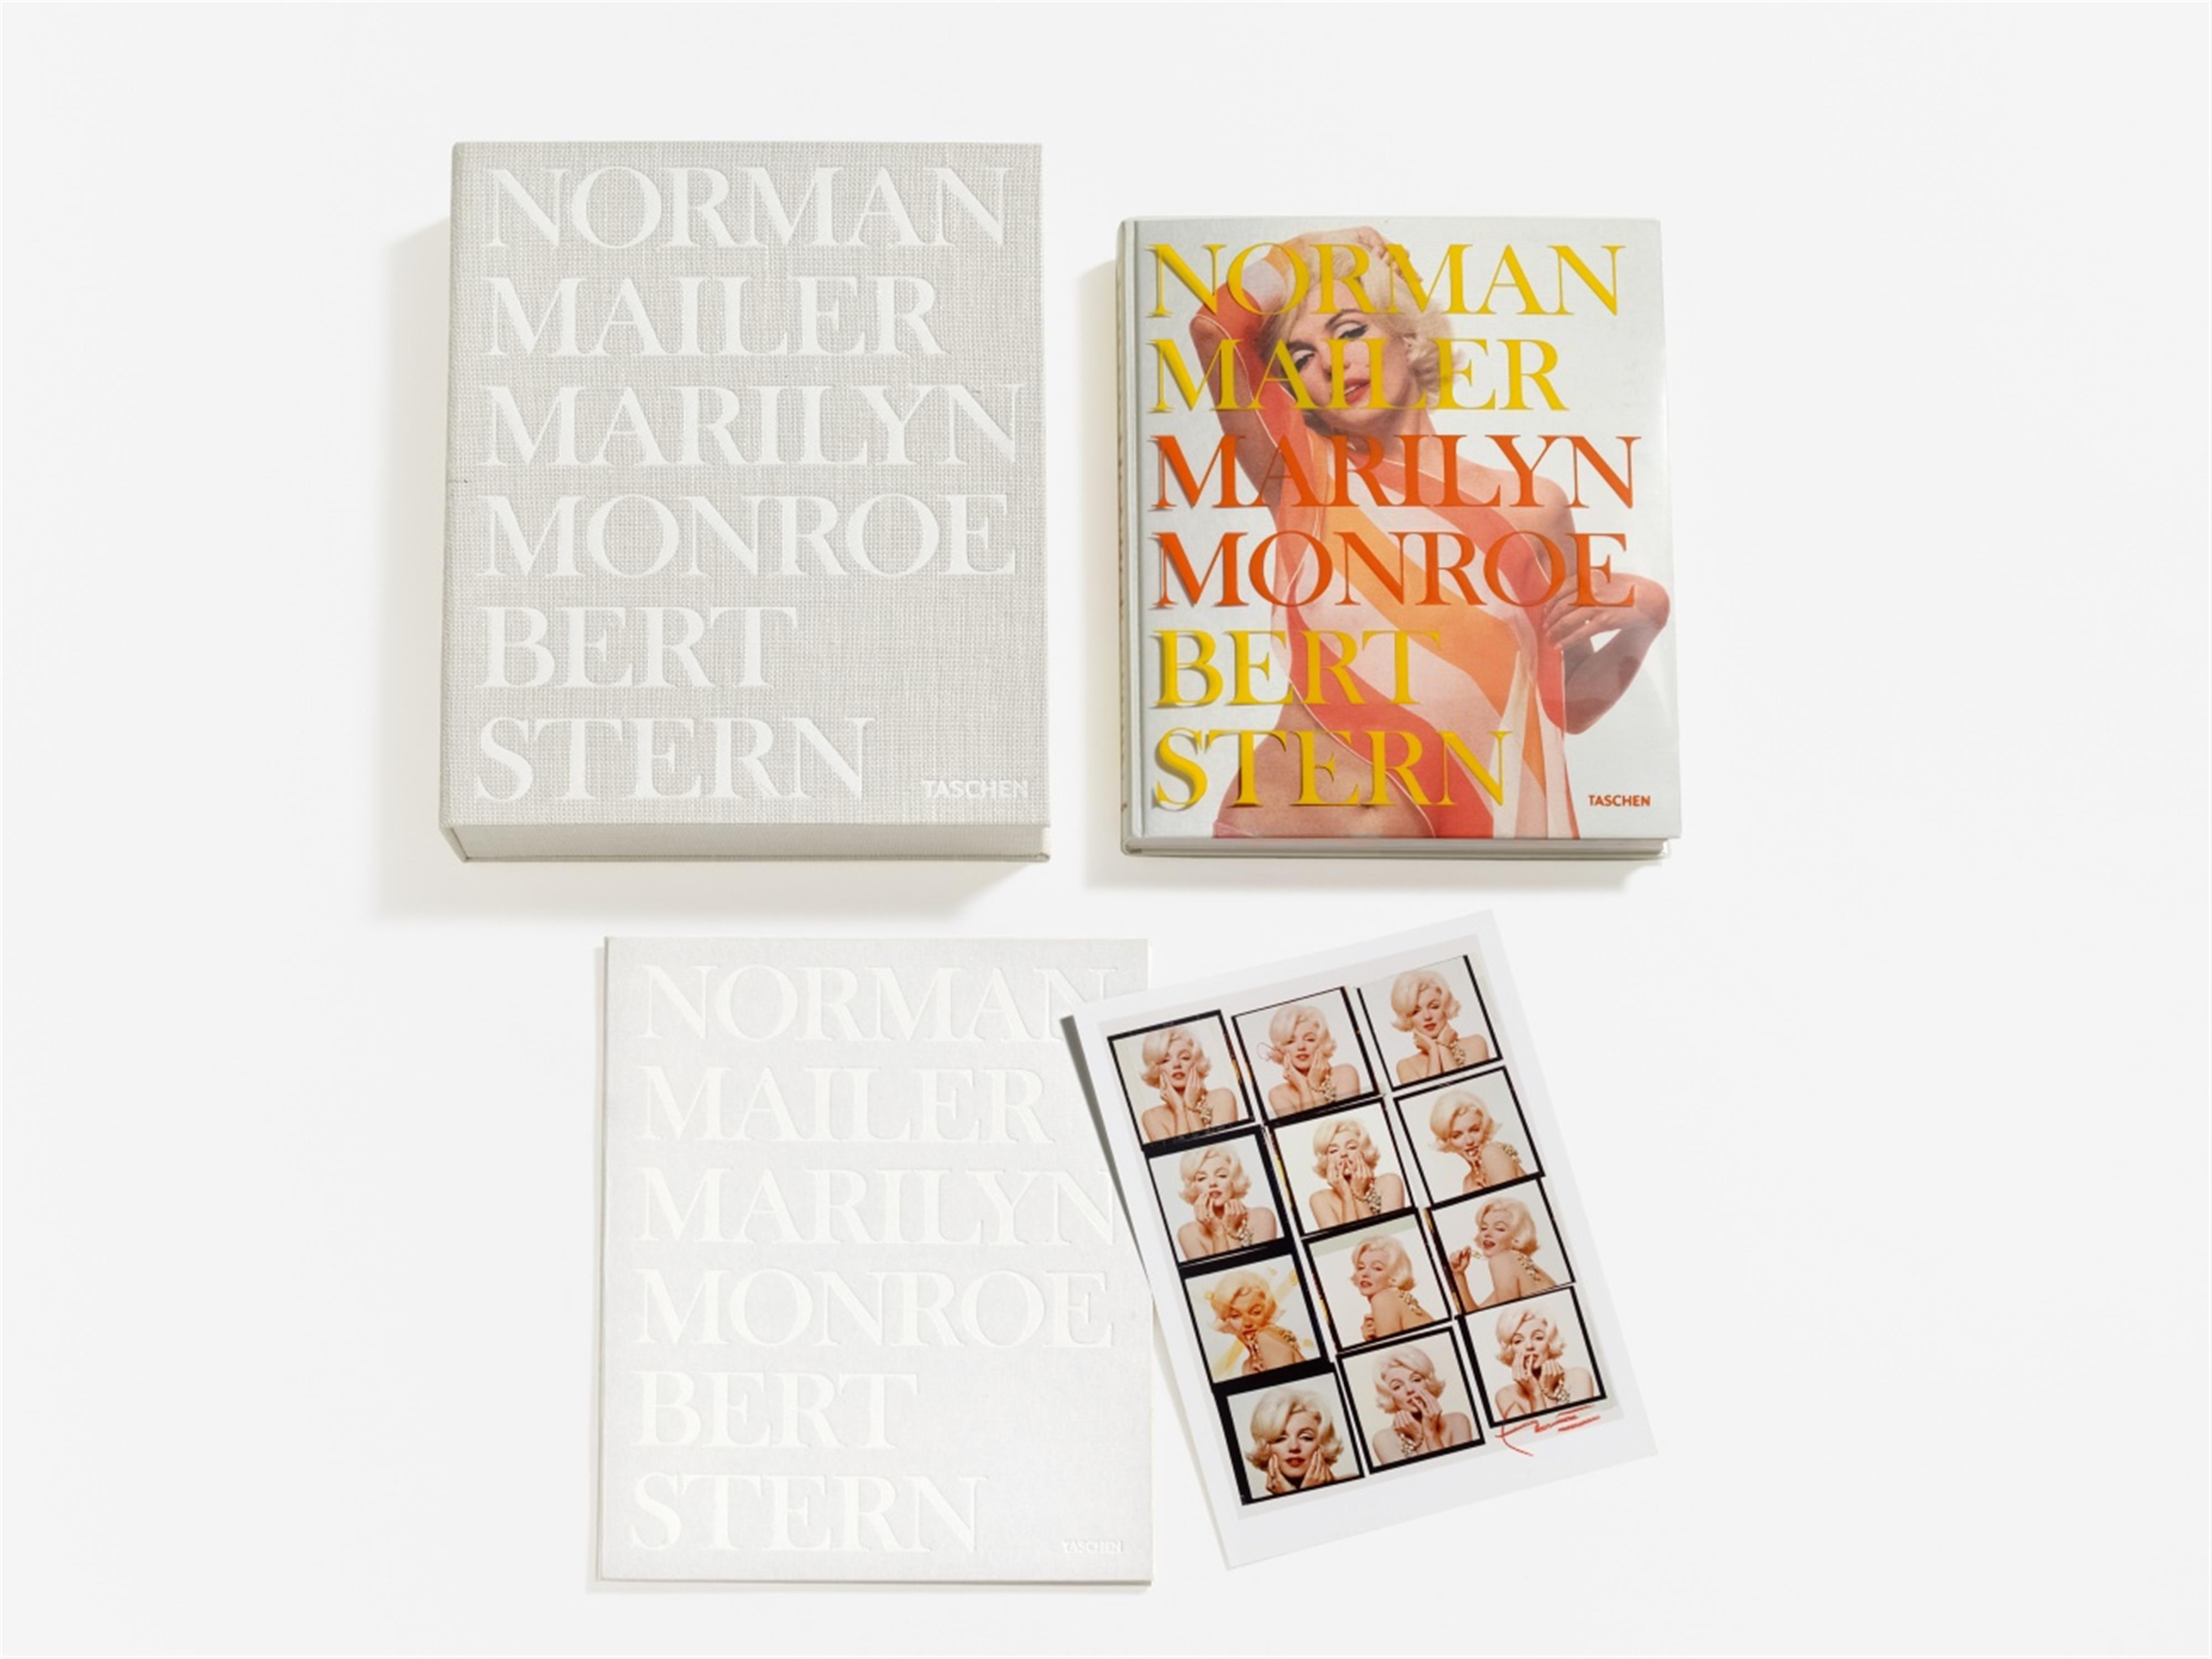 Bert Stern - Norman Mailer. Marilyn Monroe. Bert Stern / "Contact Sheet" - image-1